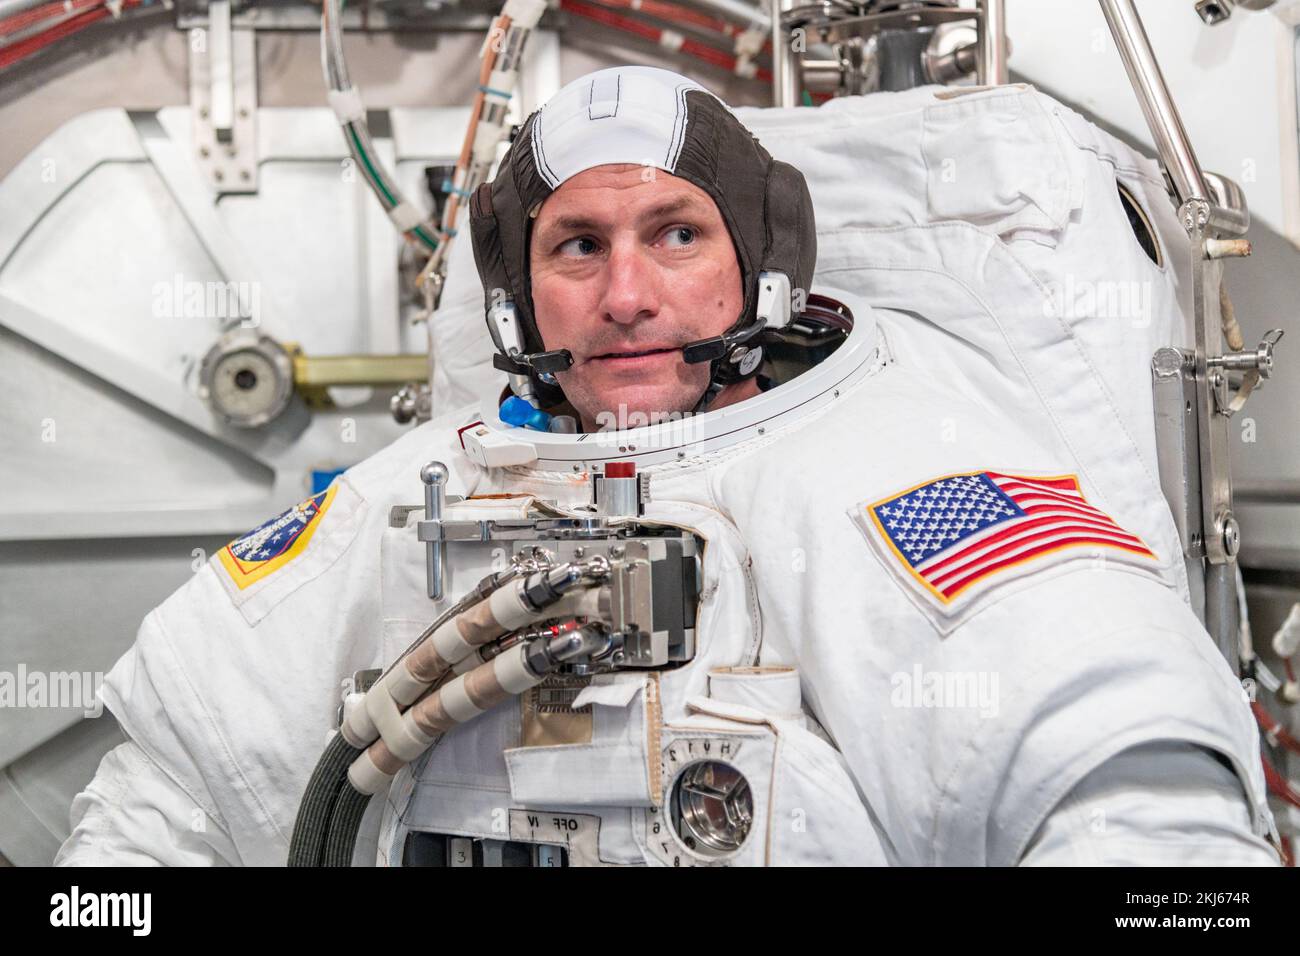 Houston, Estados Unidos. 07 de abril de 2021. El astronauta Josh Cassada de la NASA lleva el traje espacial EMU de la NASA durante su entrenamiento en el Centro Espacial Johnson de la NASA, el 7 de abril de 2021 en Houston, Texas. Crédito: NASA/NASA/Alamy Live News Foto de stock